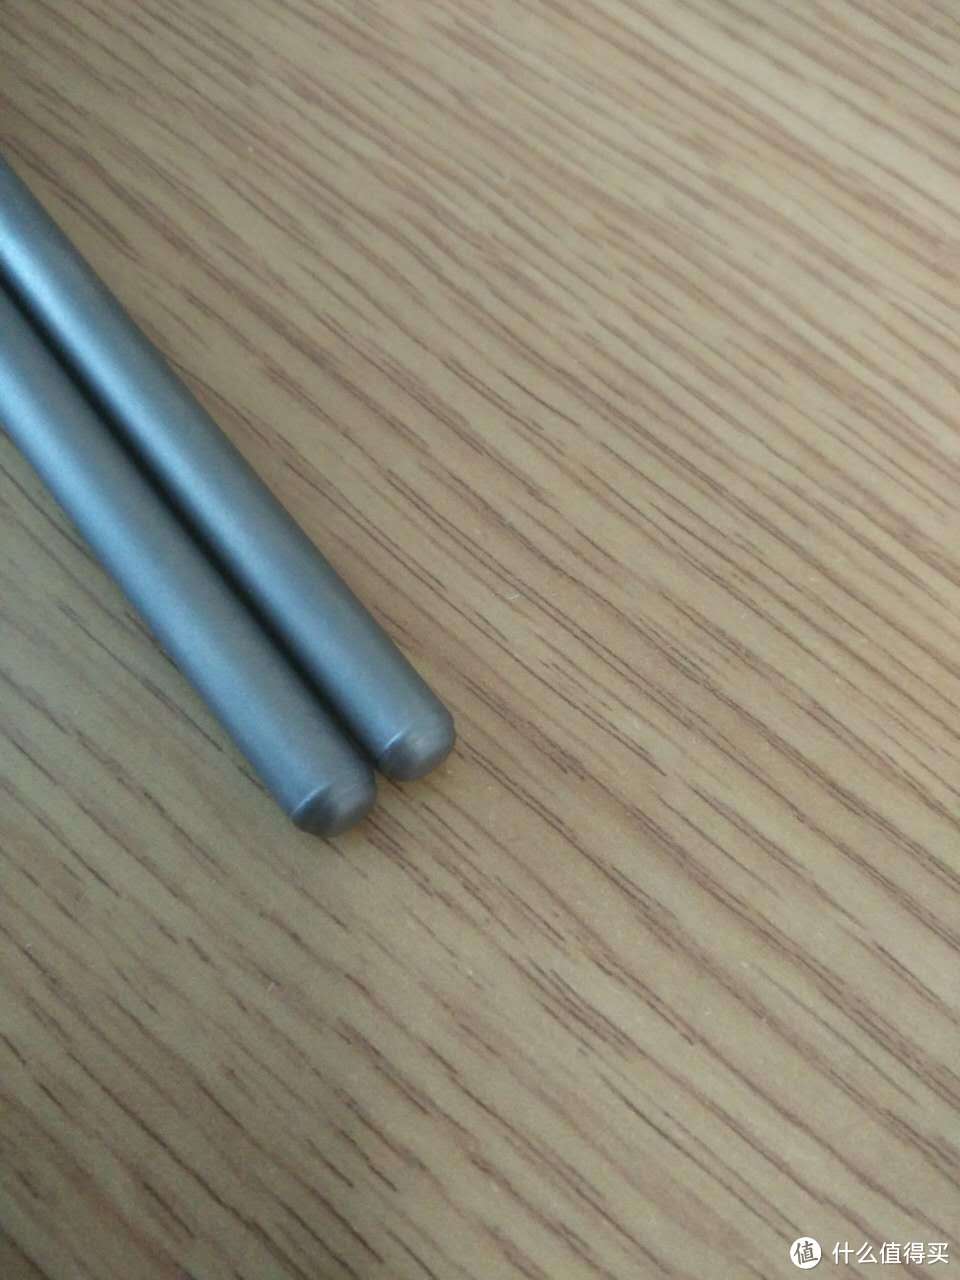 铠斯钛筷顶端应该是焊接的 几乎看不出焊接的标志 比较平滑